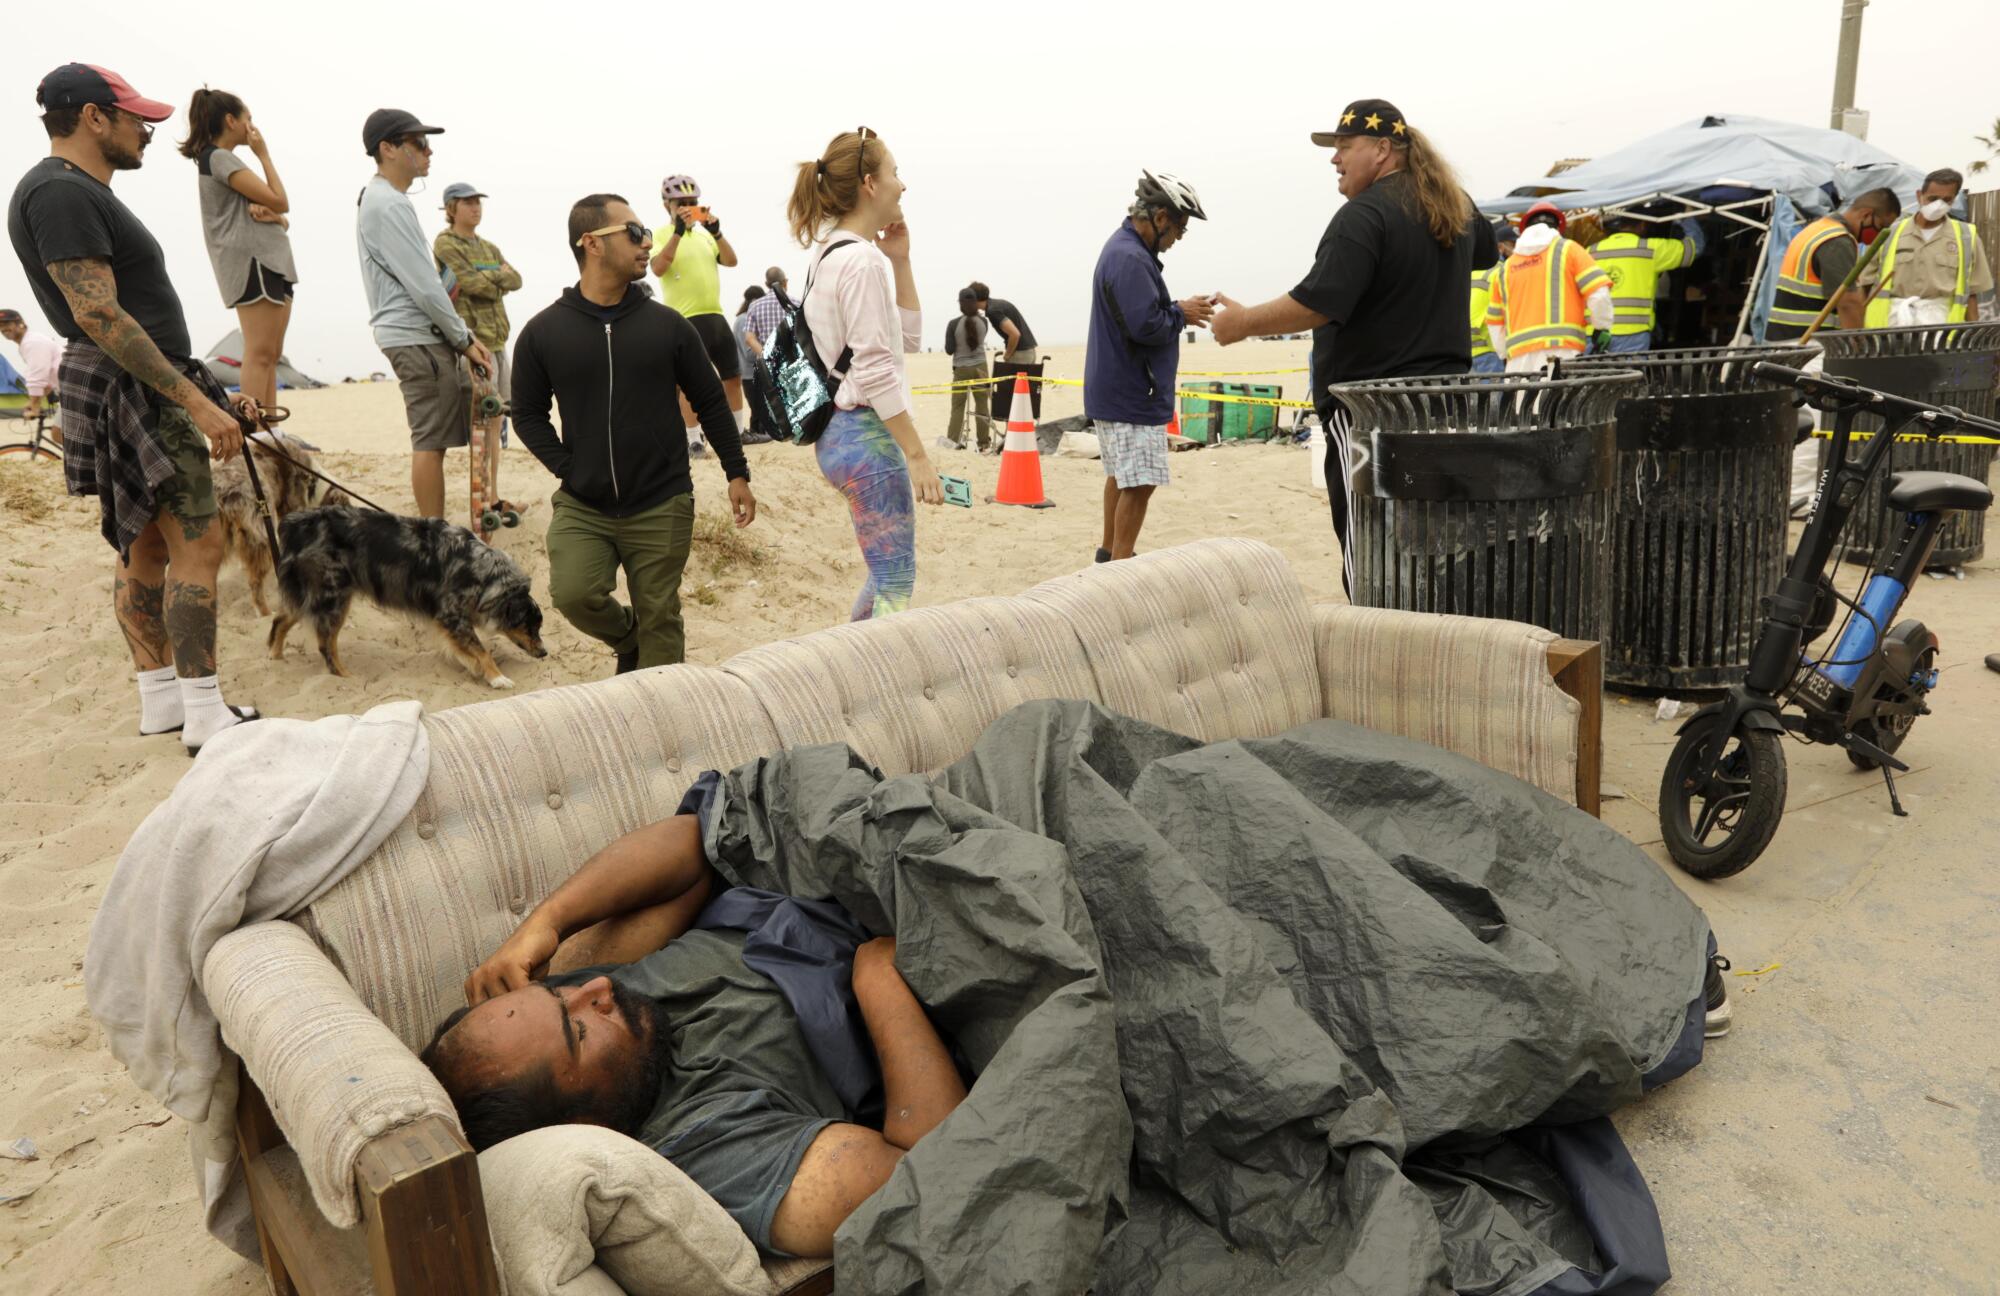 July 30: A homeless man sleeps on a couch as sanitation crews clear a homeless encampment on the beach